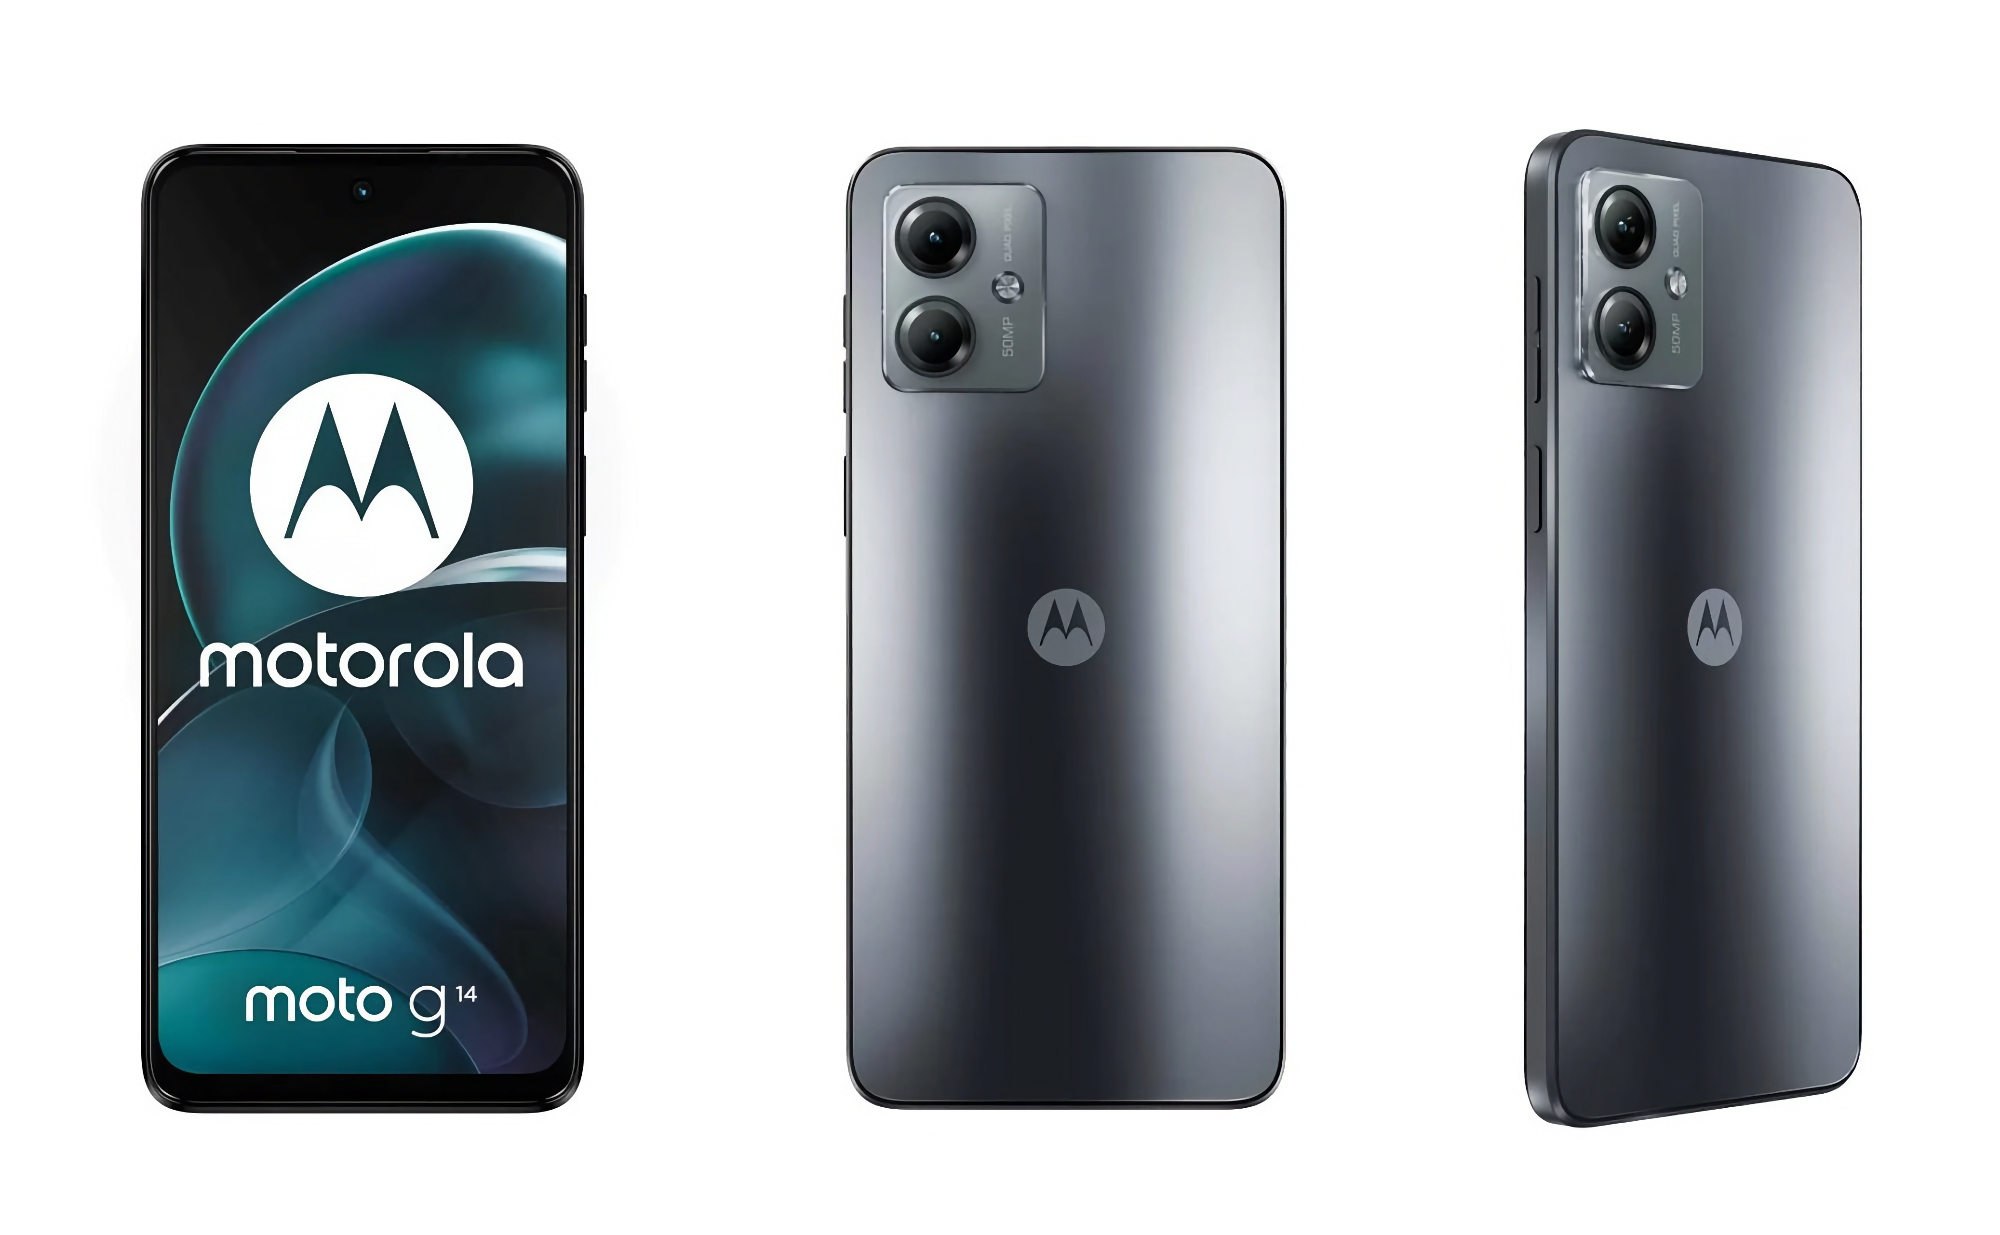 En insider har publicerat bilder, specifikationer och pris för Moto G14 smartphone i Europa